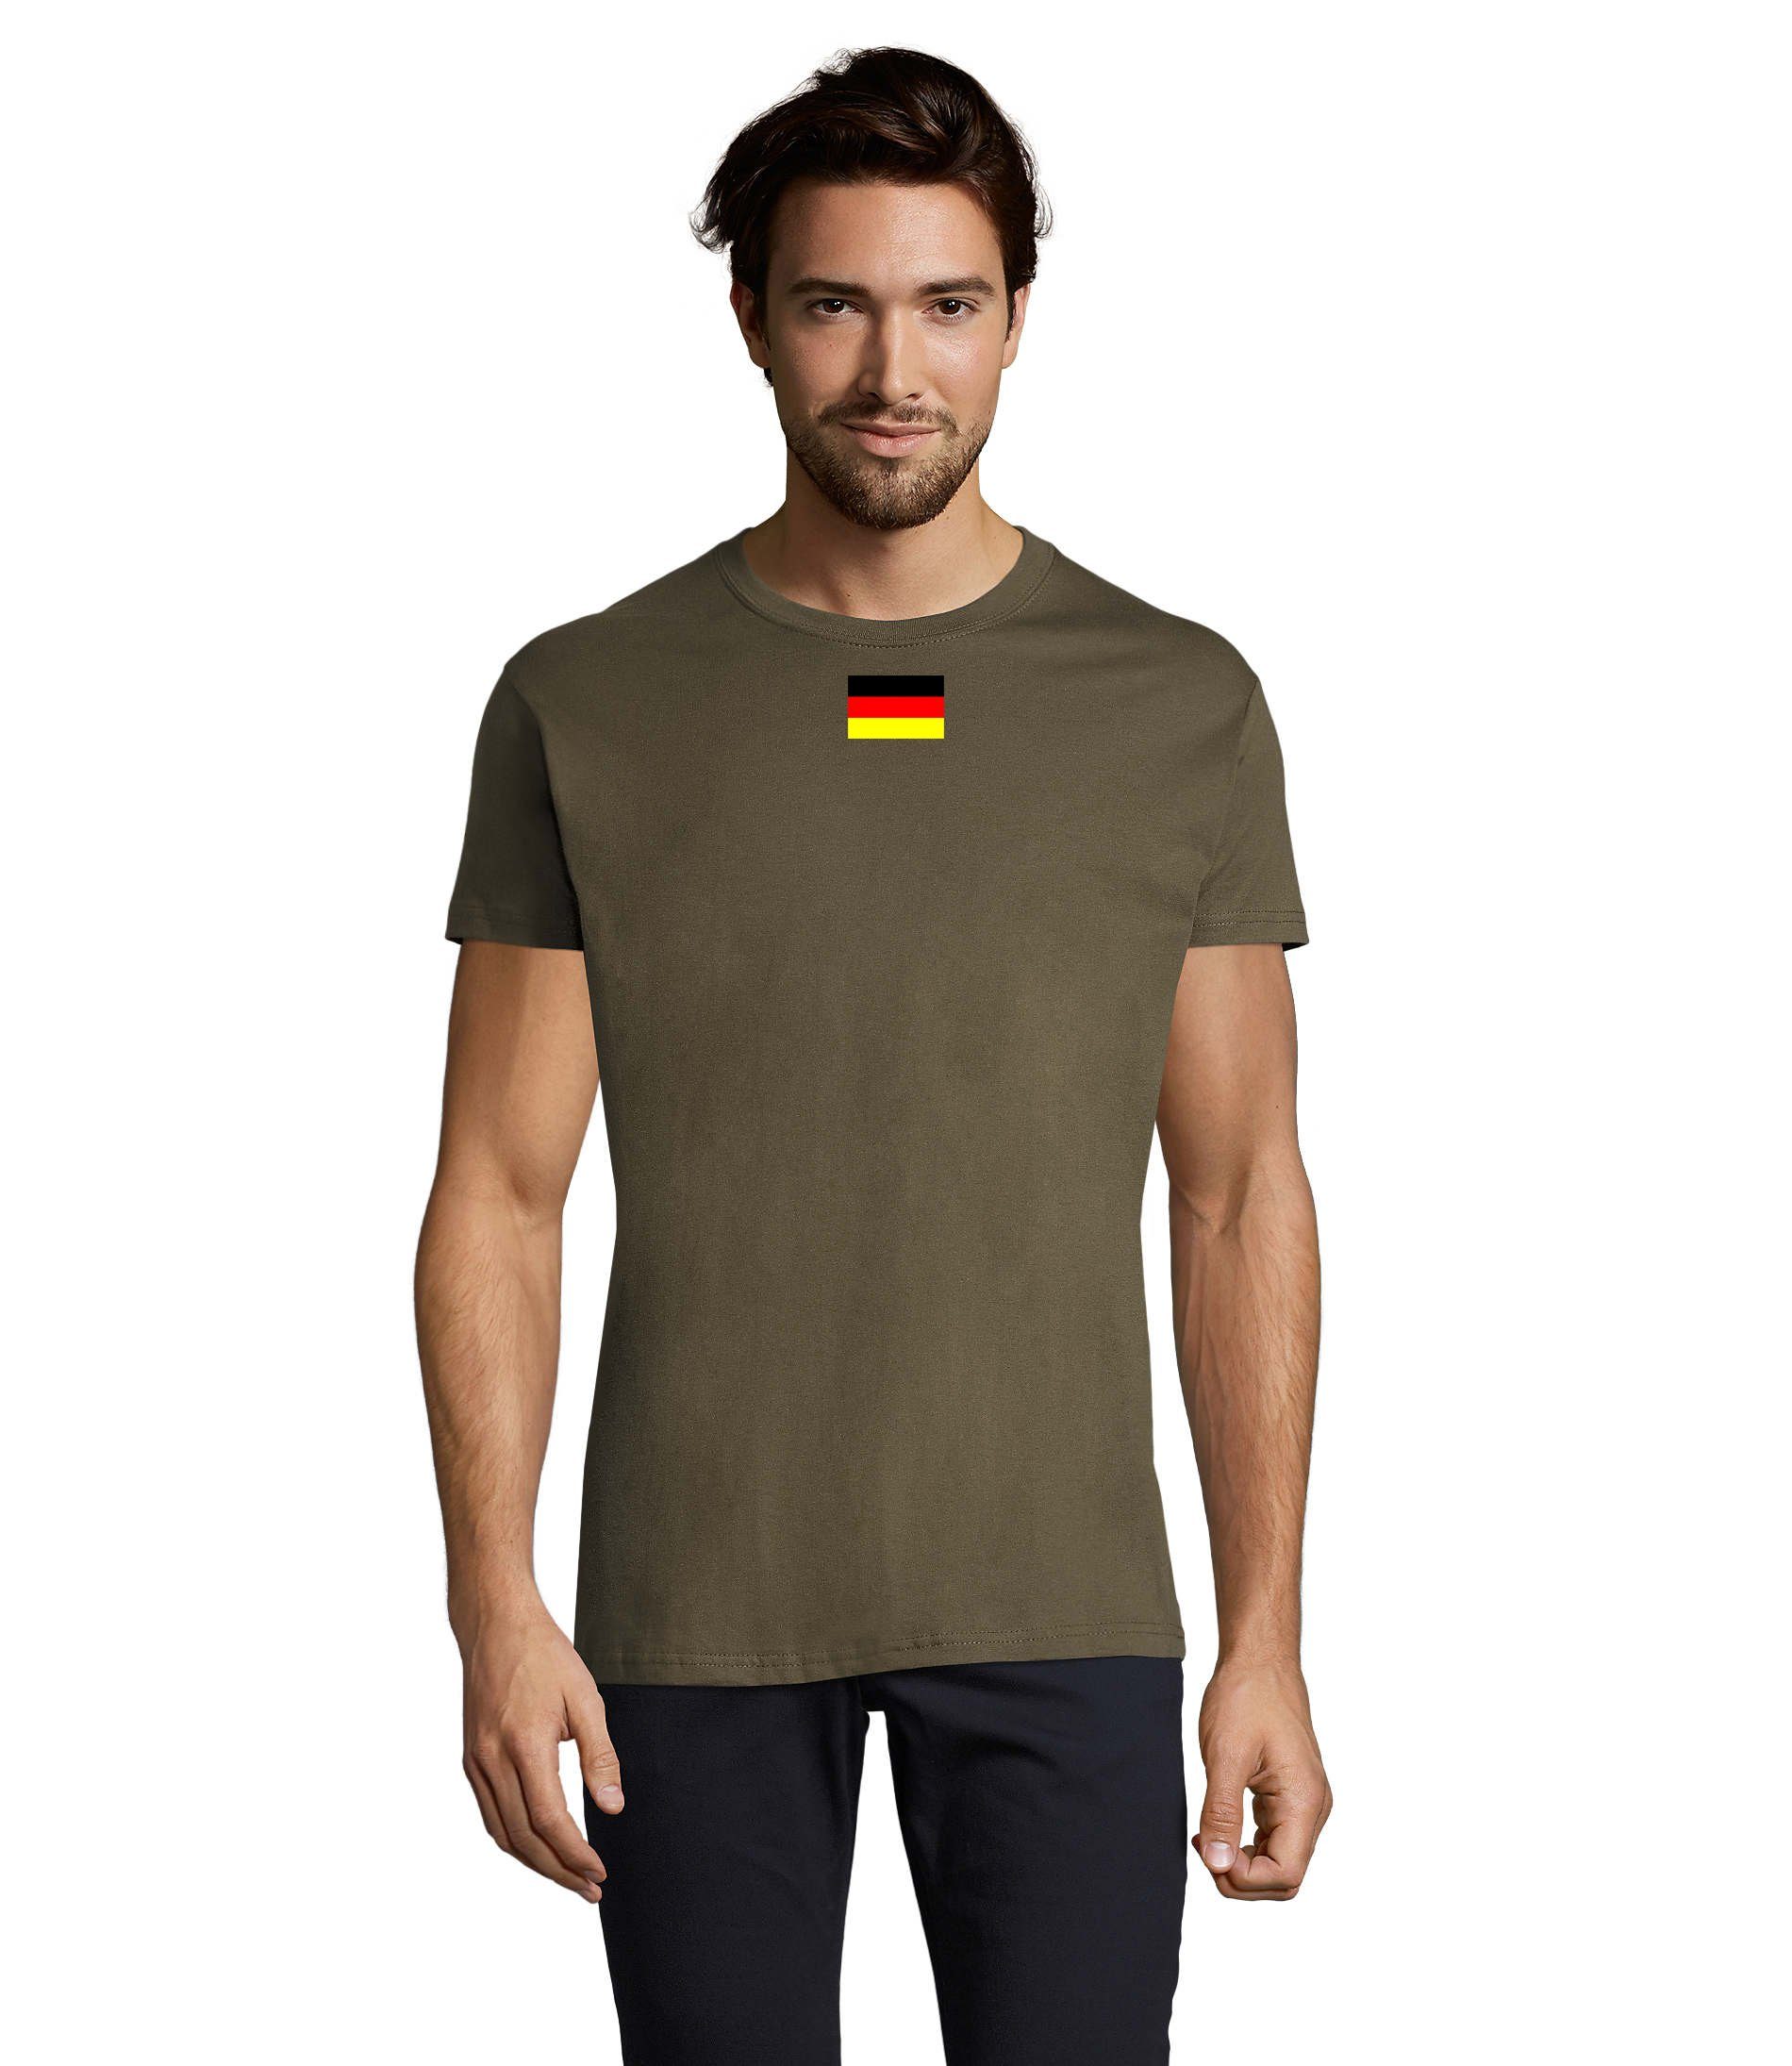 Blondie & Brownie T-Shirt Herren Nation Deutschland Germany Ukraine USA Army Armee Nato